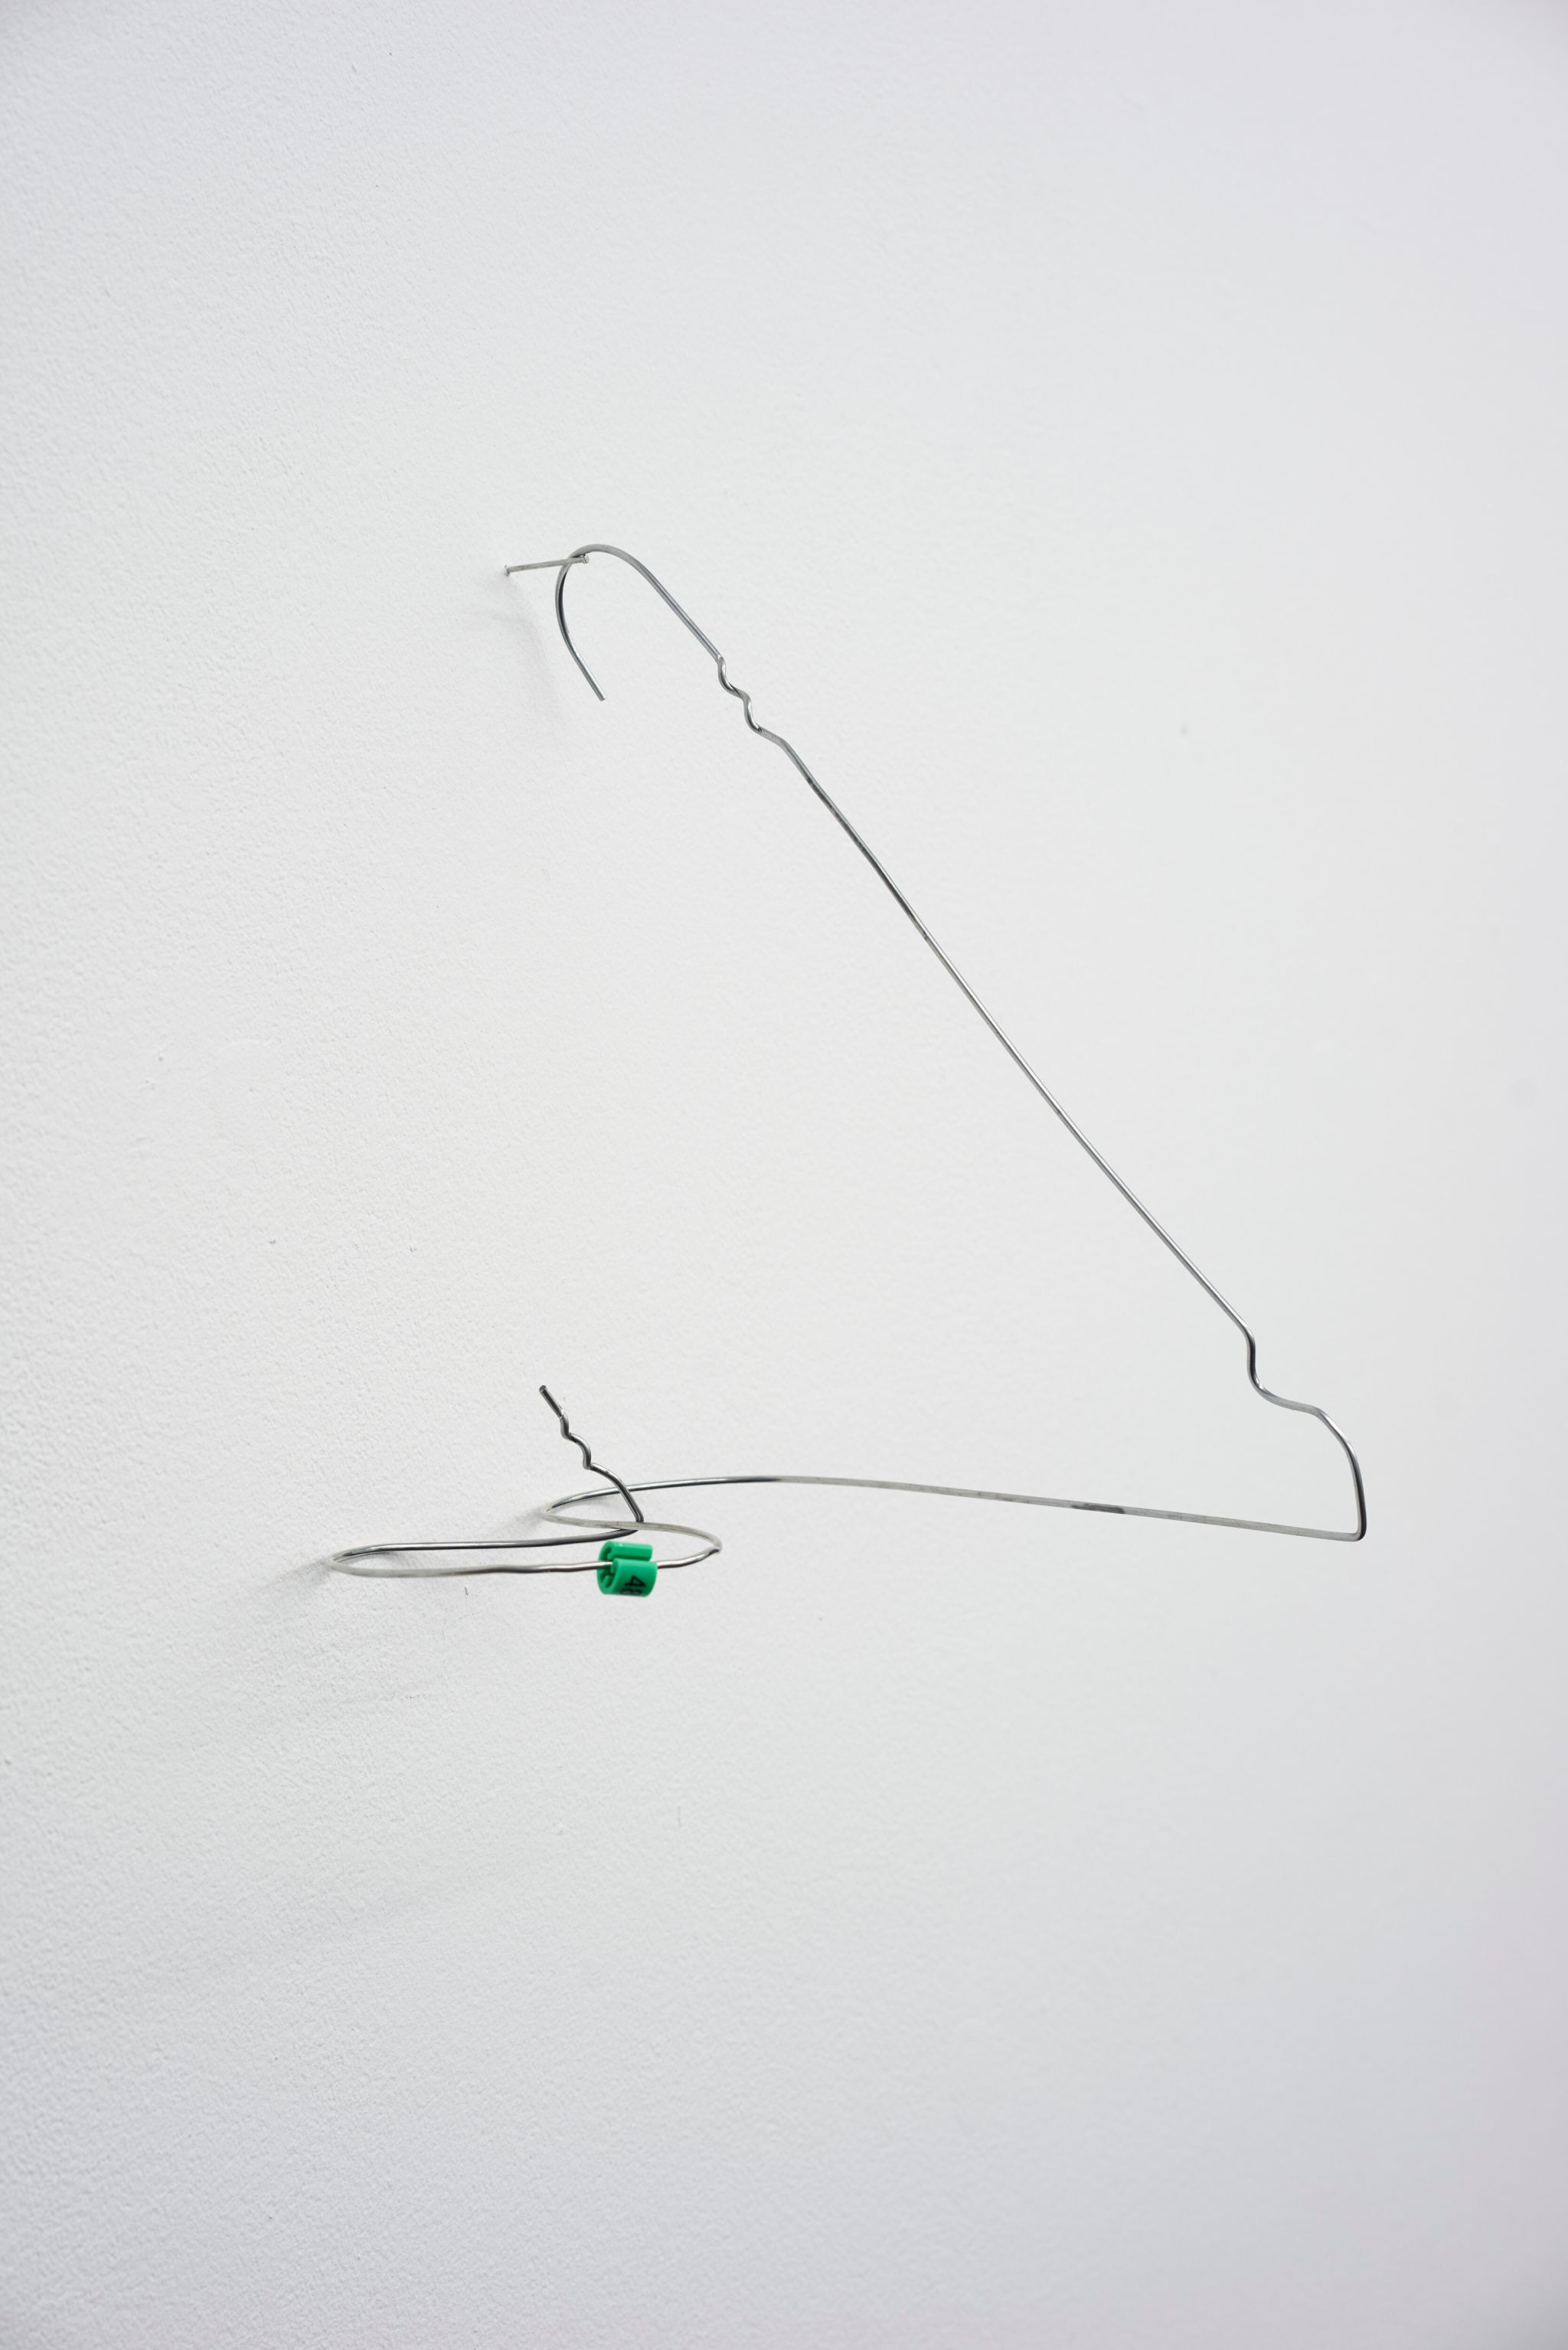 Davide Stucchi, Naso (Pisello) I, 2017, Aluminum hanger, 25 ⁠× ⁠19 ⁠× ⁠26 ⁠⁠cm